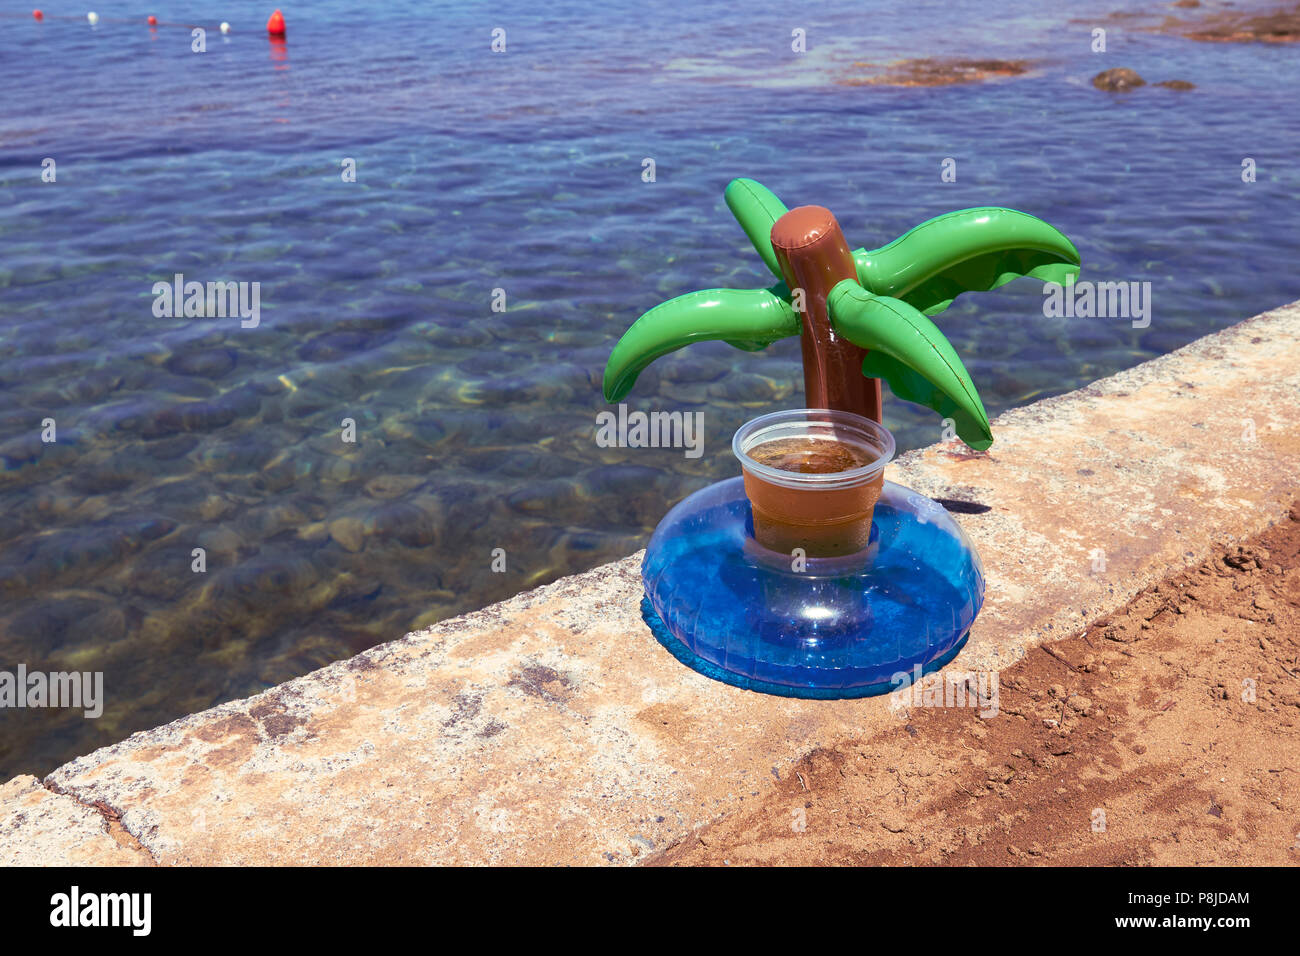 Aufblasbare Palme Getränkehalter mit Bier am Strand Stockfotografie - Alamy